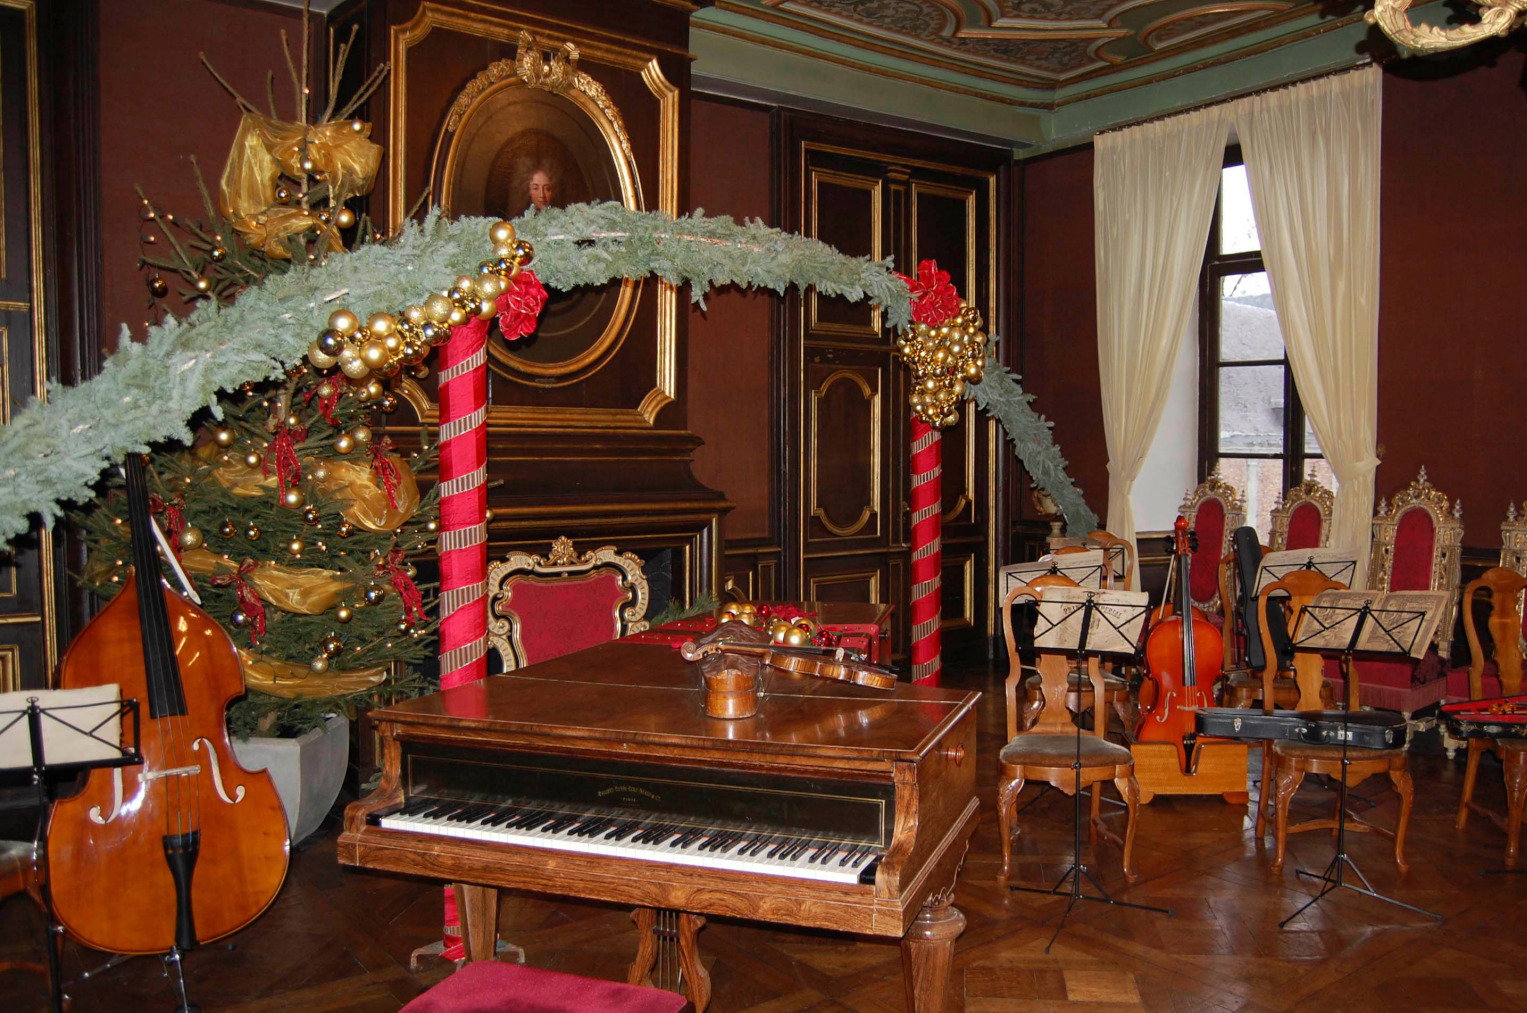 Salle de musique au Château de Modave